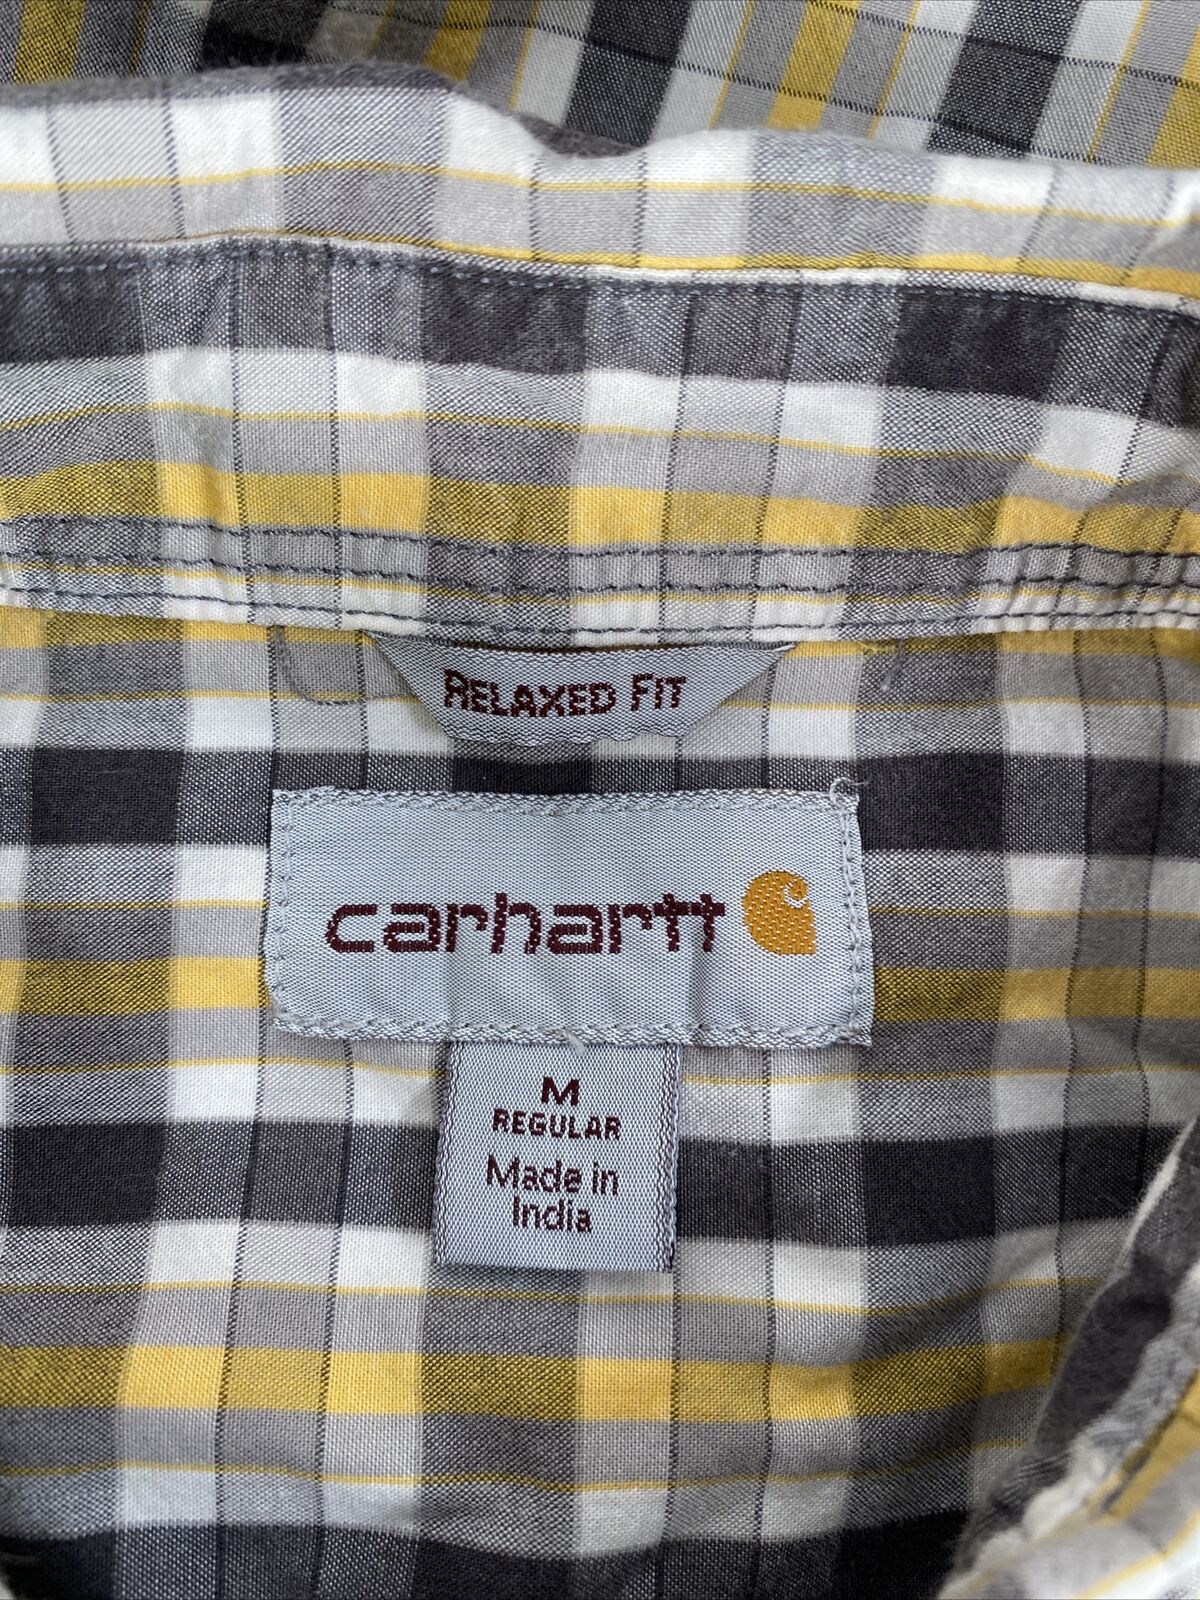 Carhartt Men's Gray/Yellow Short Sleeve Relaxed Fit Button Up Shirt - M